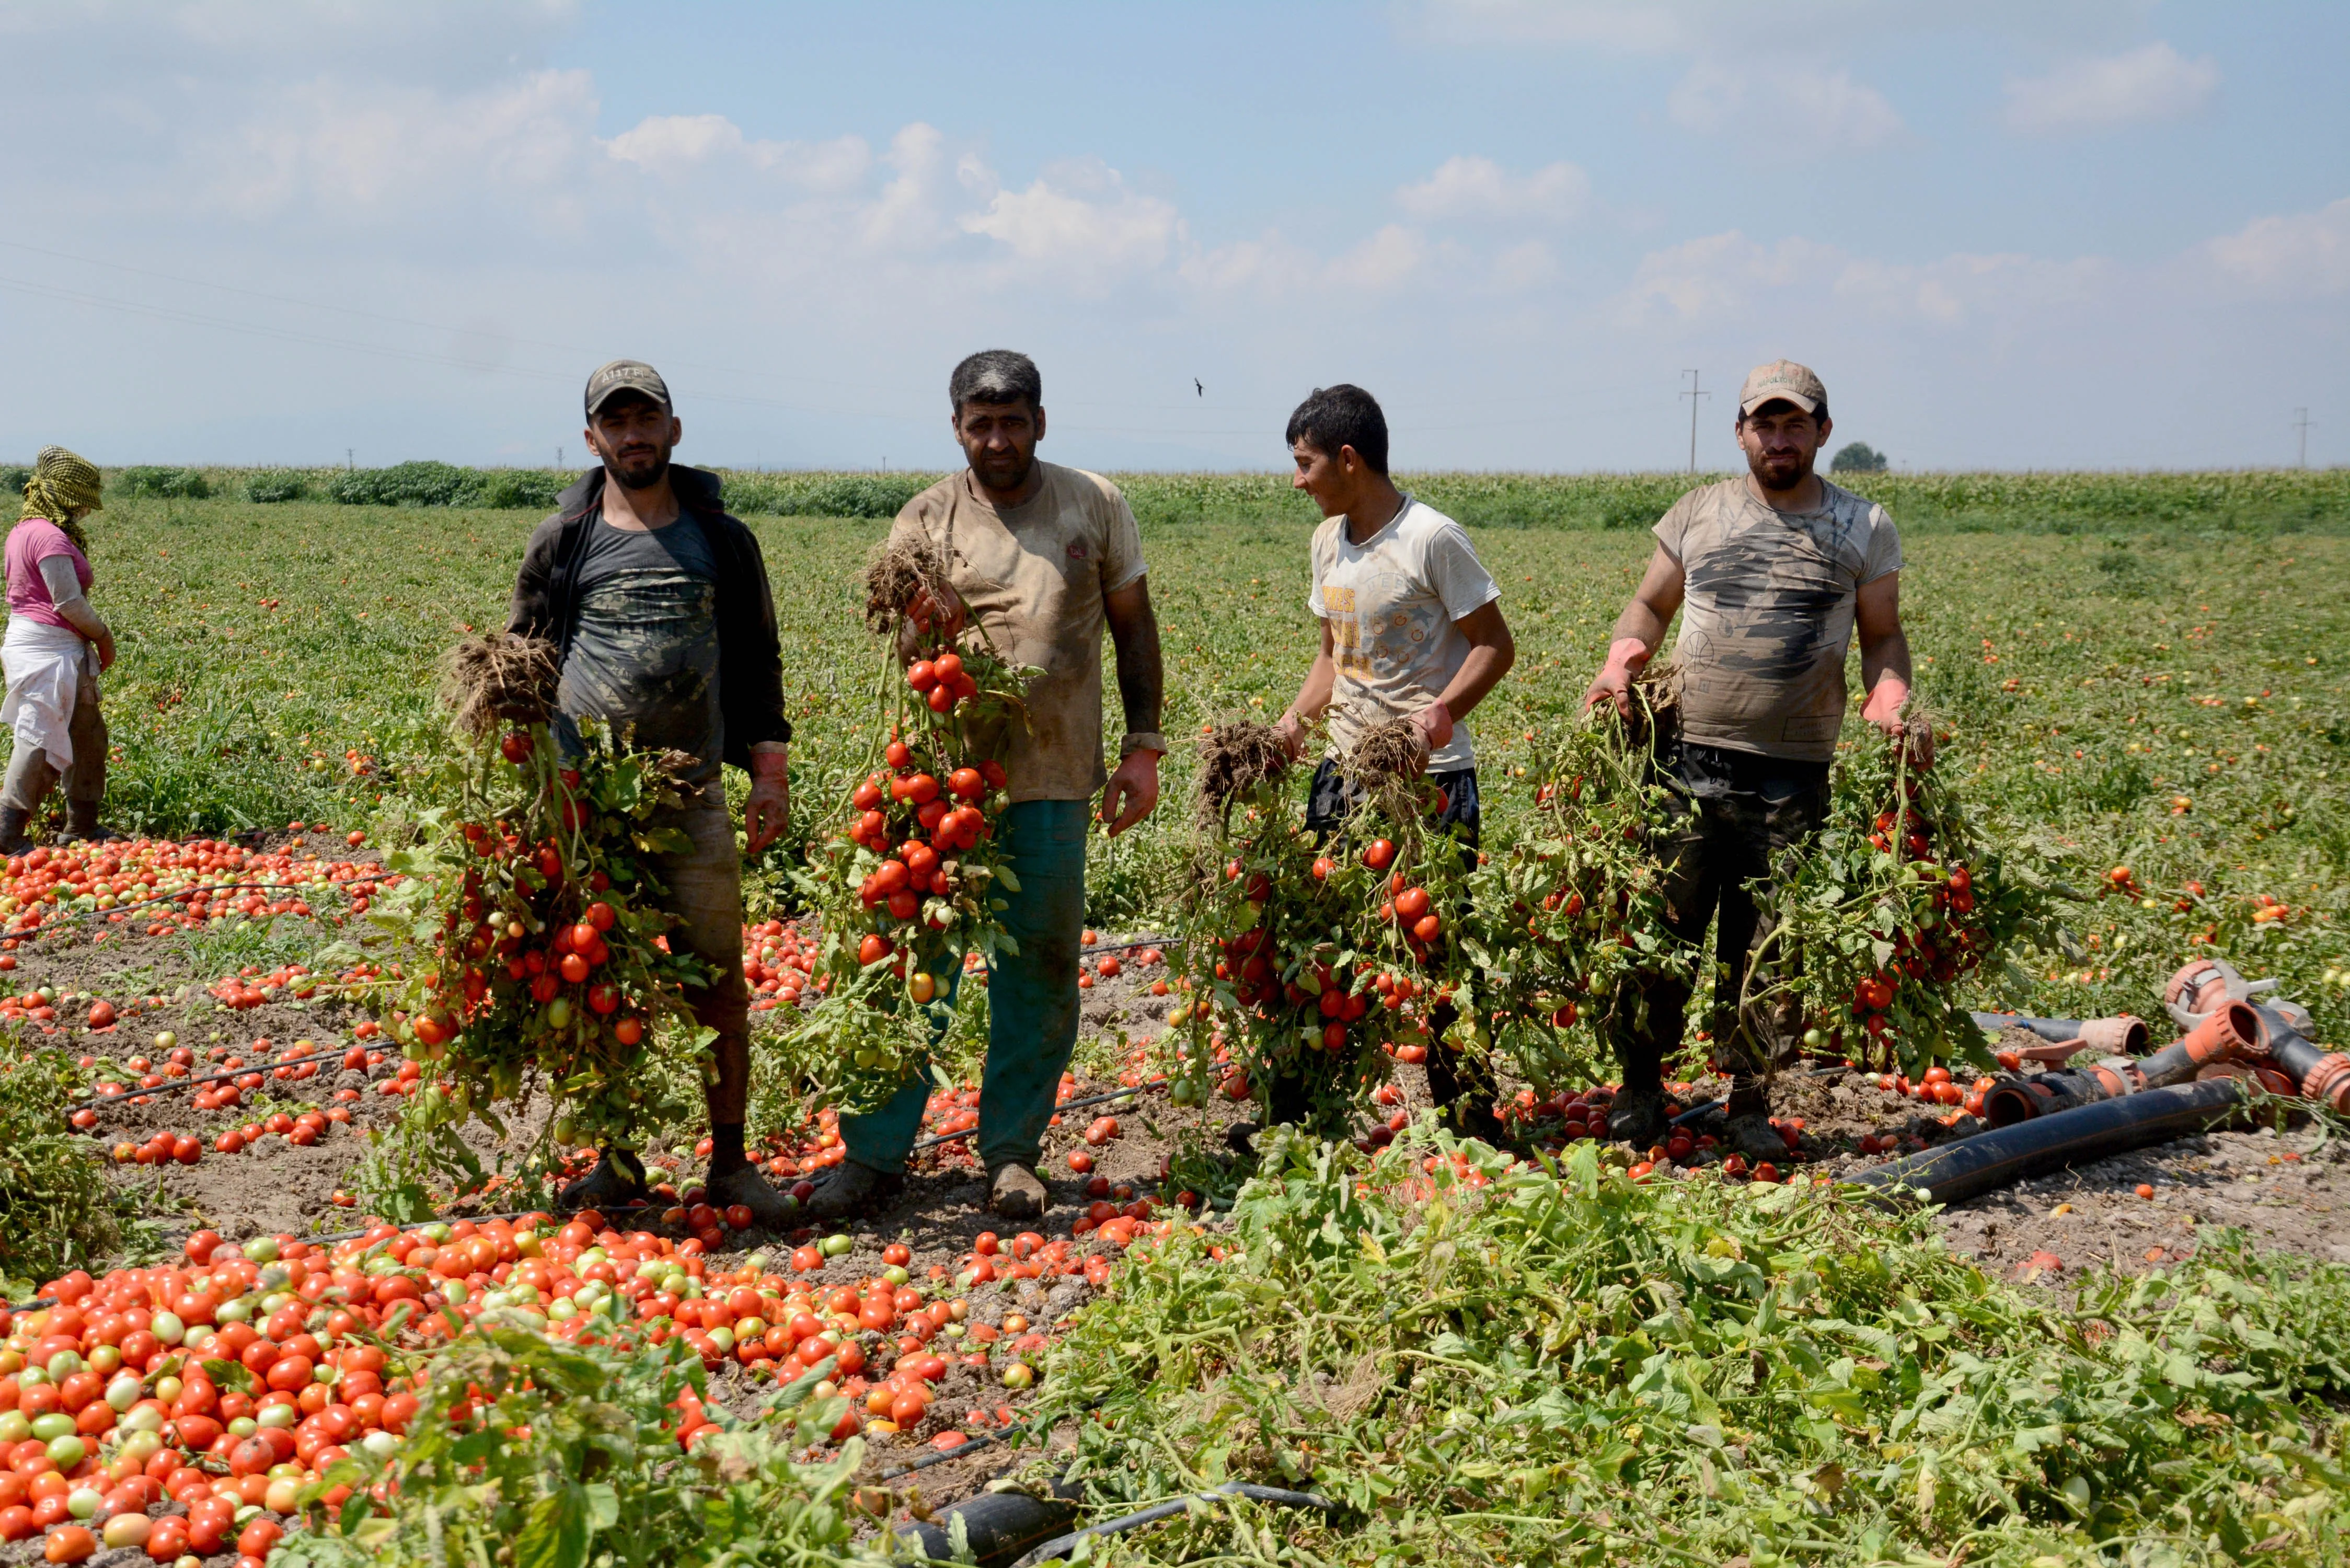 Karacabey Ovası’nda domates hasadı başladı